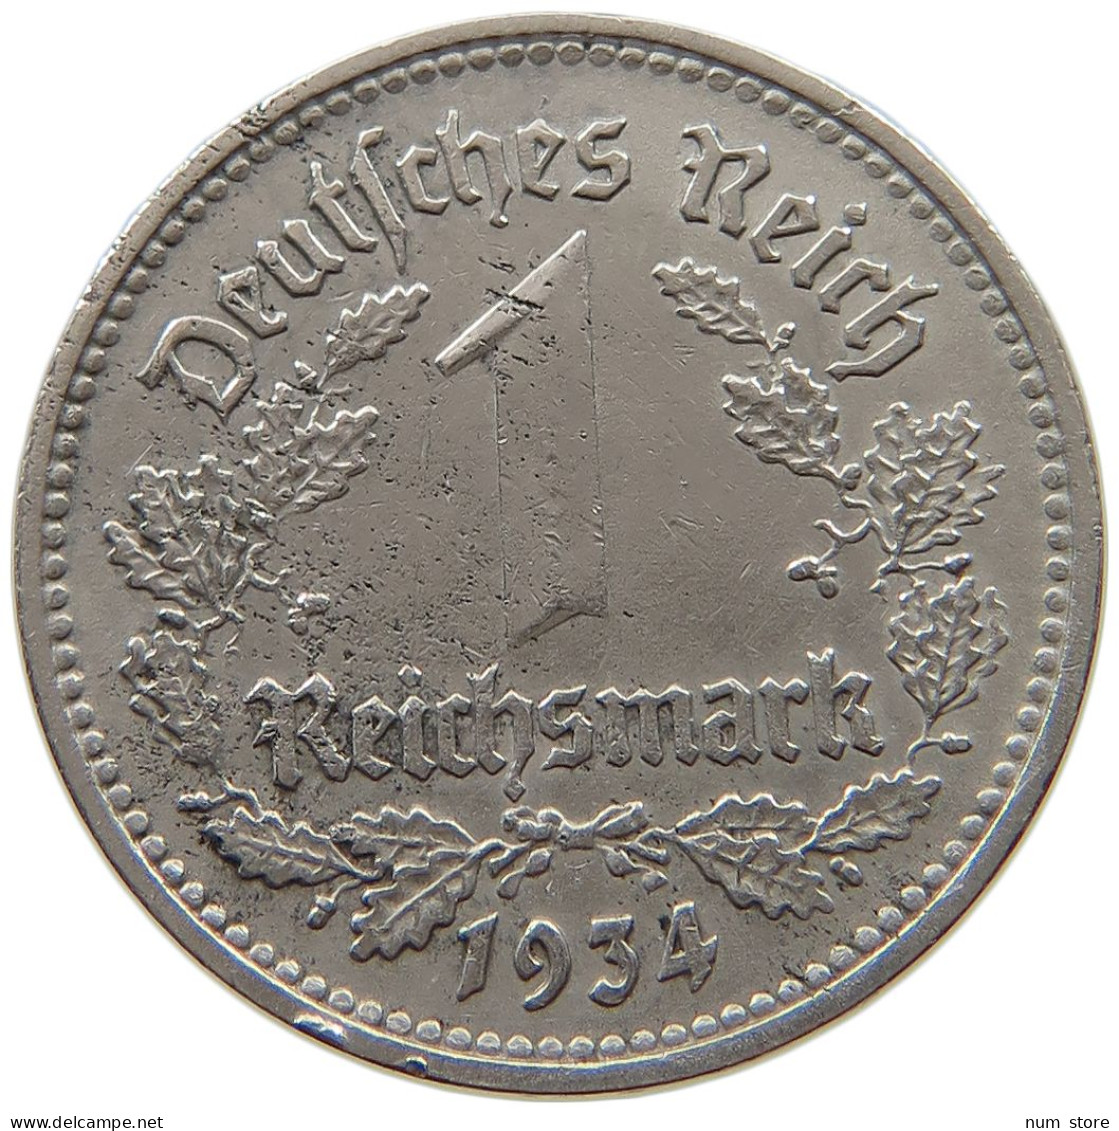 DRITTES REICH MARK 1934 D J.354 #a015 0835 - 1 Reichsmark